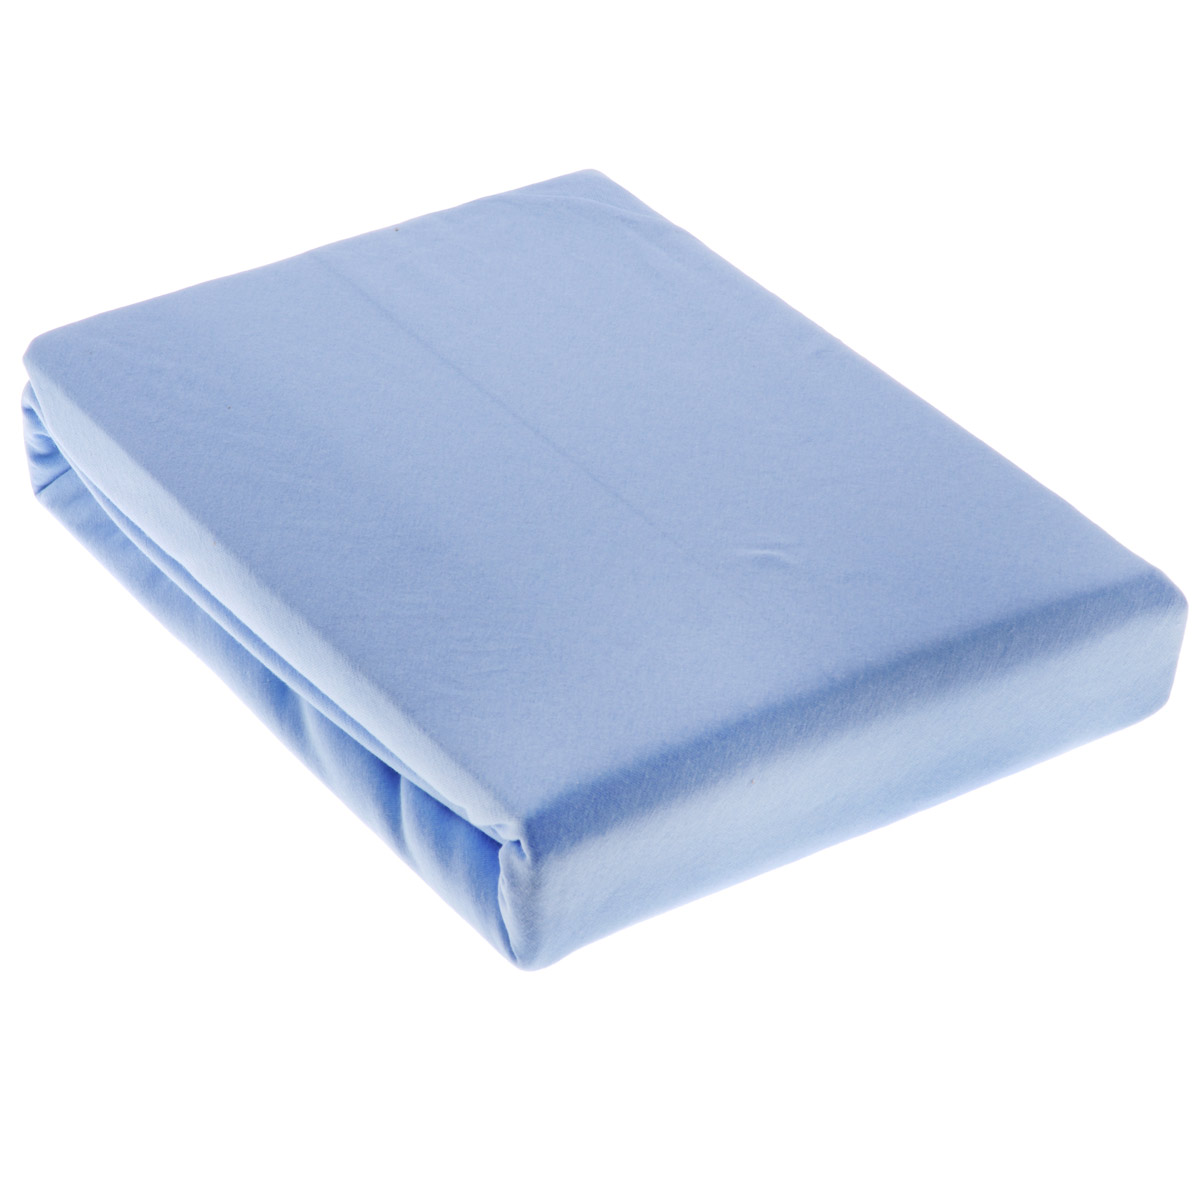 фото Простыня OL-Tex "Джерси", на резинке, цвет: голубой, 160 см х 200 см х 20 см